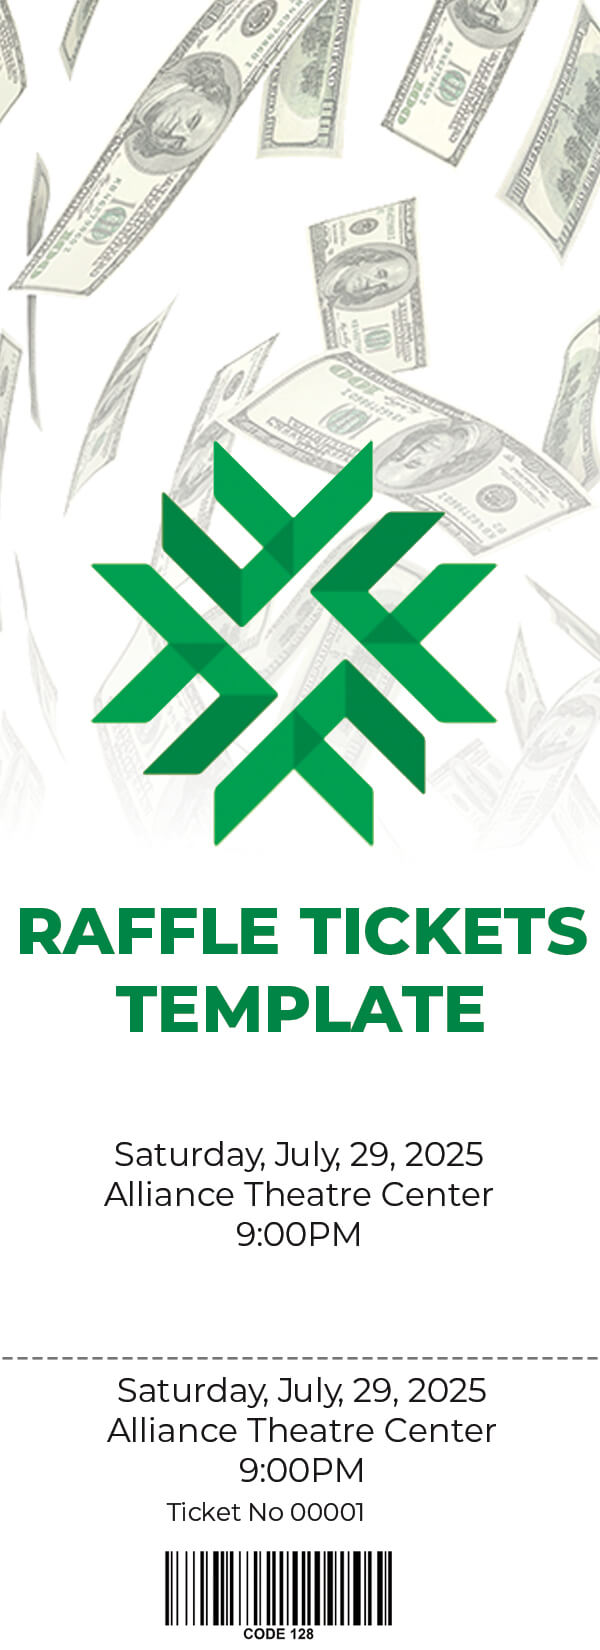 raffle tickets template PSD idea Design Sample